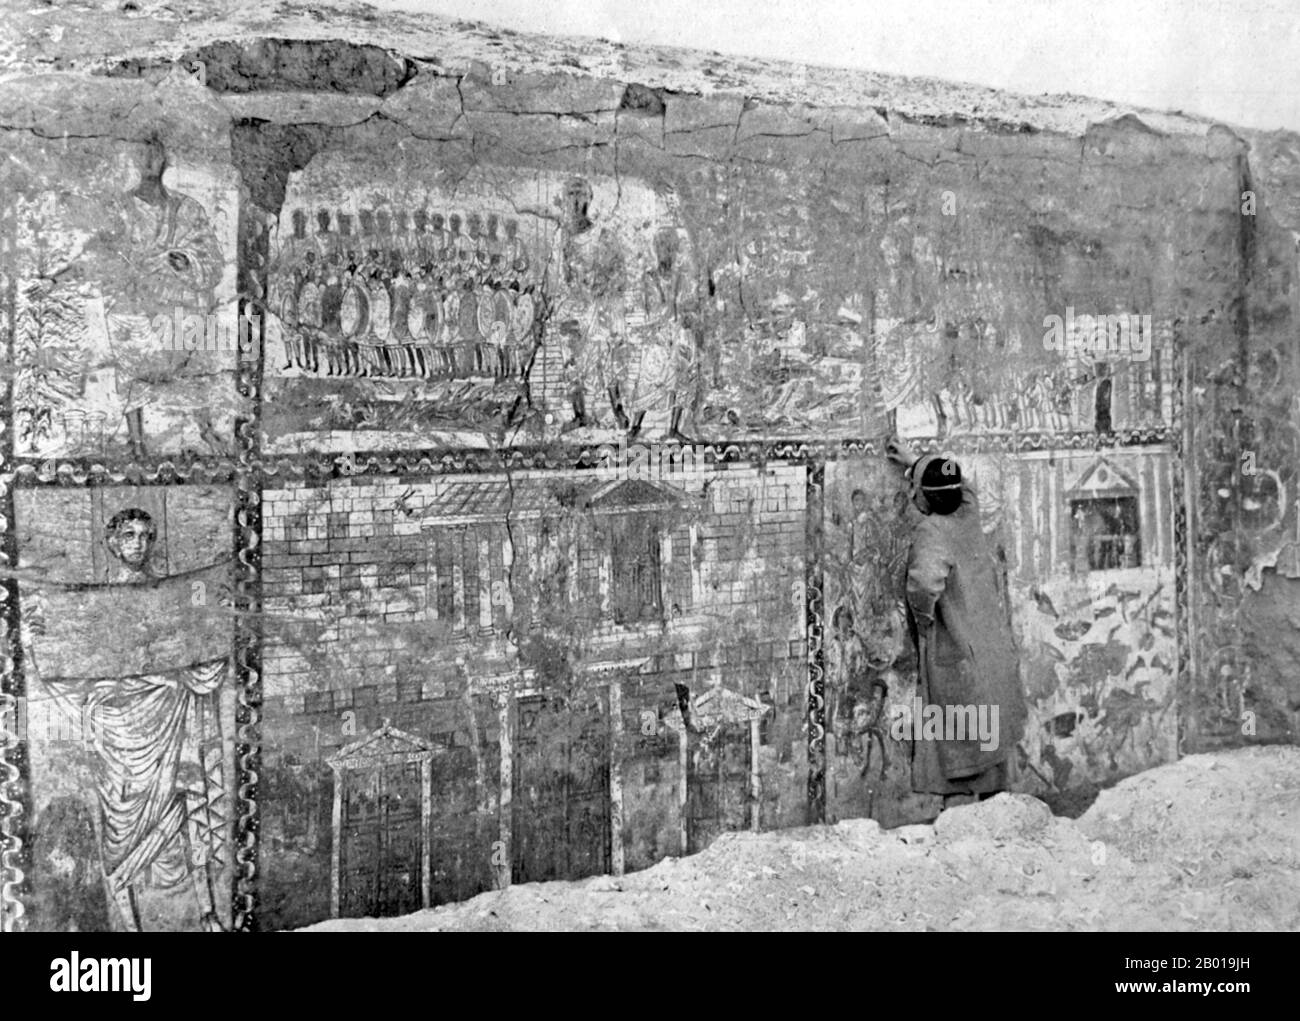 Siria: La parete ovest della sinagoga a dura Europos poco dopo la sua scoperta nel 1932, 29 luglio 1933. La sinagoga dura Europos è un'antica sinagoga scoperta a dura-Europos, Siria, nel 1932. L'ultima fase di costruzione fu datata da un'iscrizione aramaica al 244 d.C., rendendola una delle più antiche sinagoghe del mondo. E' unico tra le molte sinagoghe antiche che sono emerse dagli scavi archeologici come è stato conservato praticamente intatto, e ha vasti dipinti-muro figurativi. Questi affreschi sono ora esposti nel Museo Nazionale di Damasco. Foto Stock